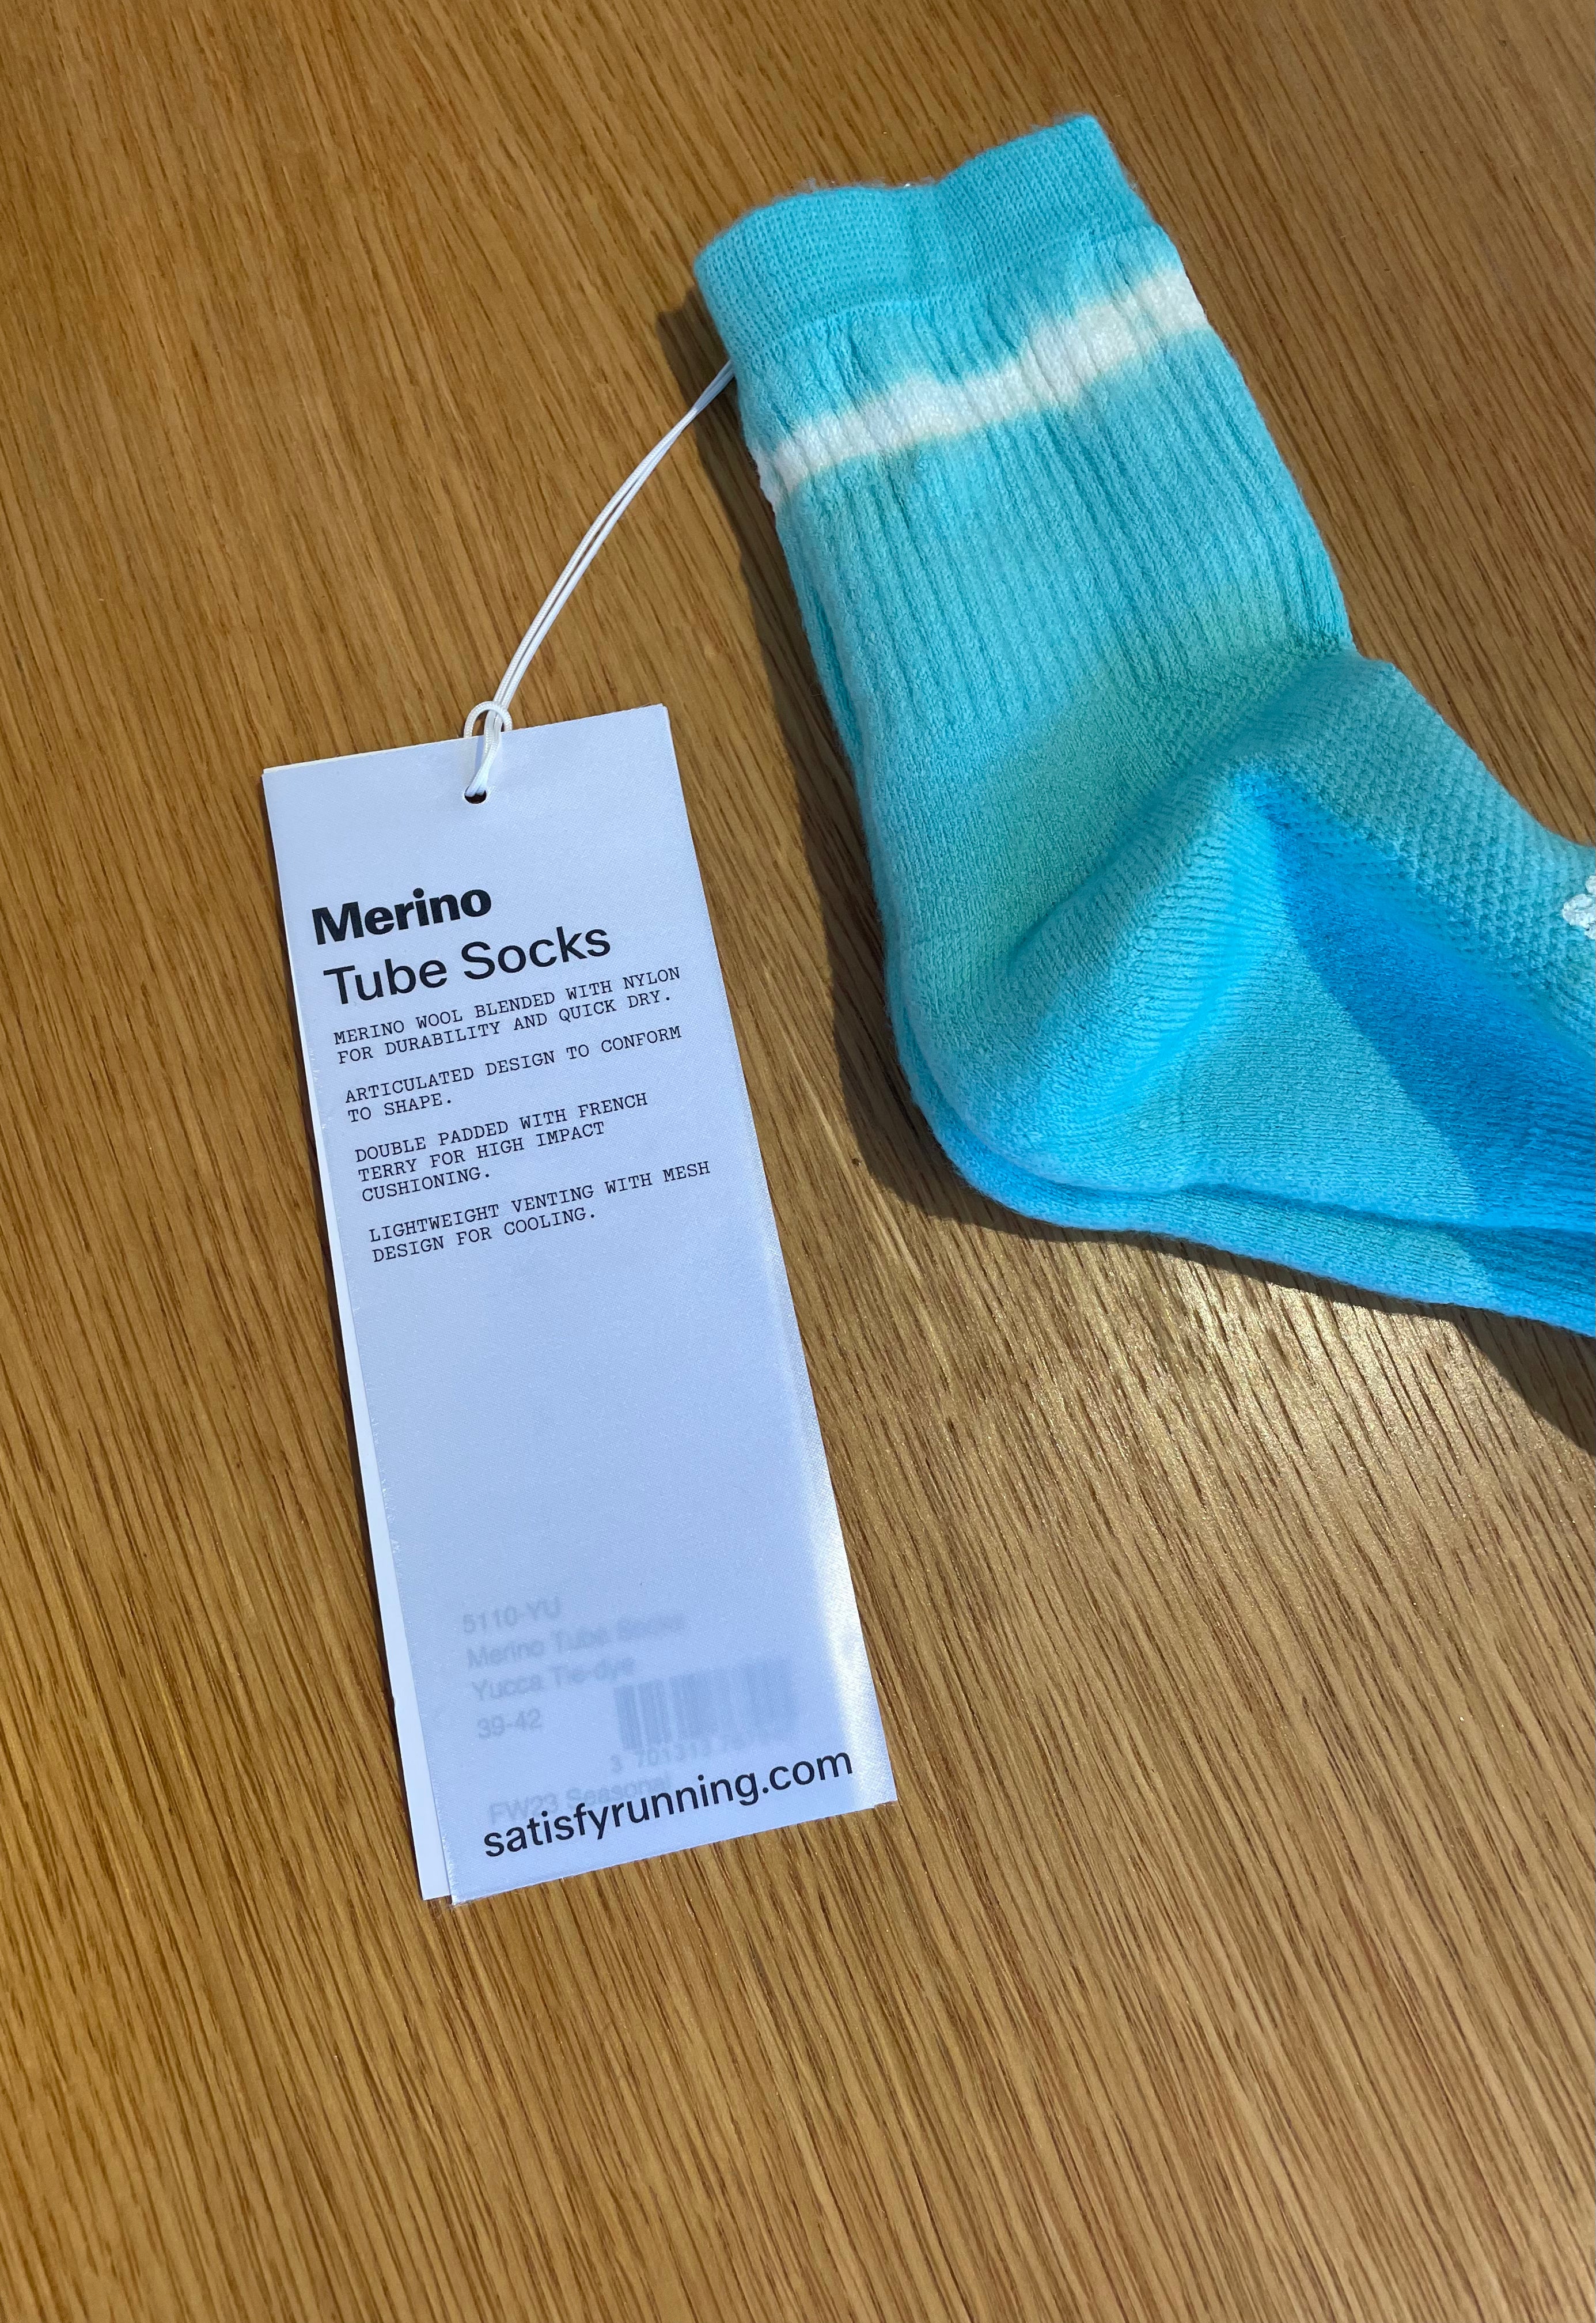 Satisfy Merino Tube Socks